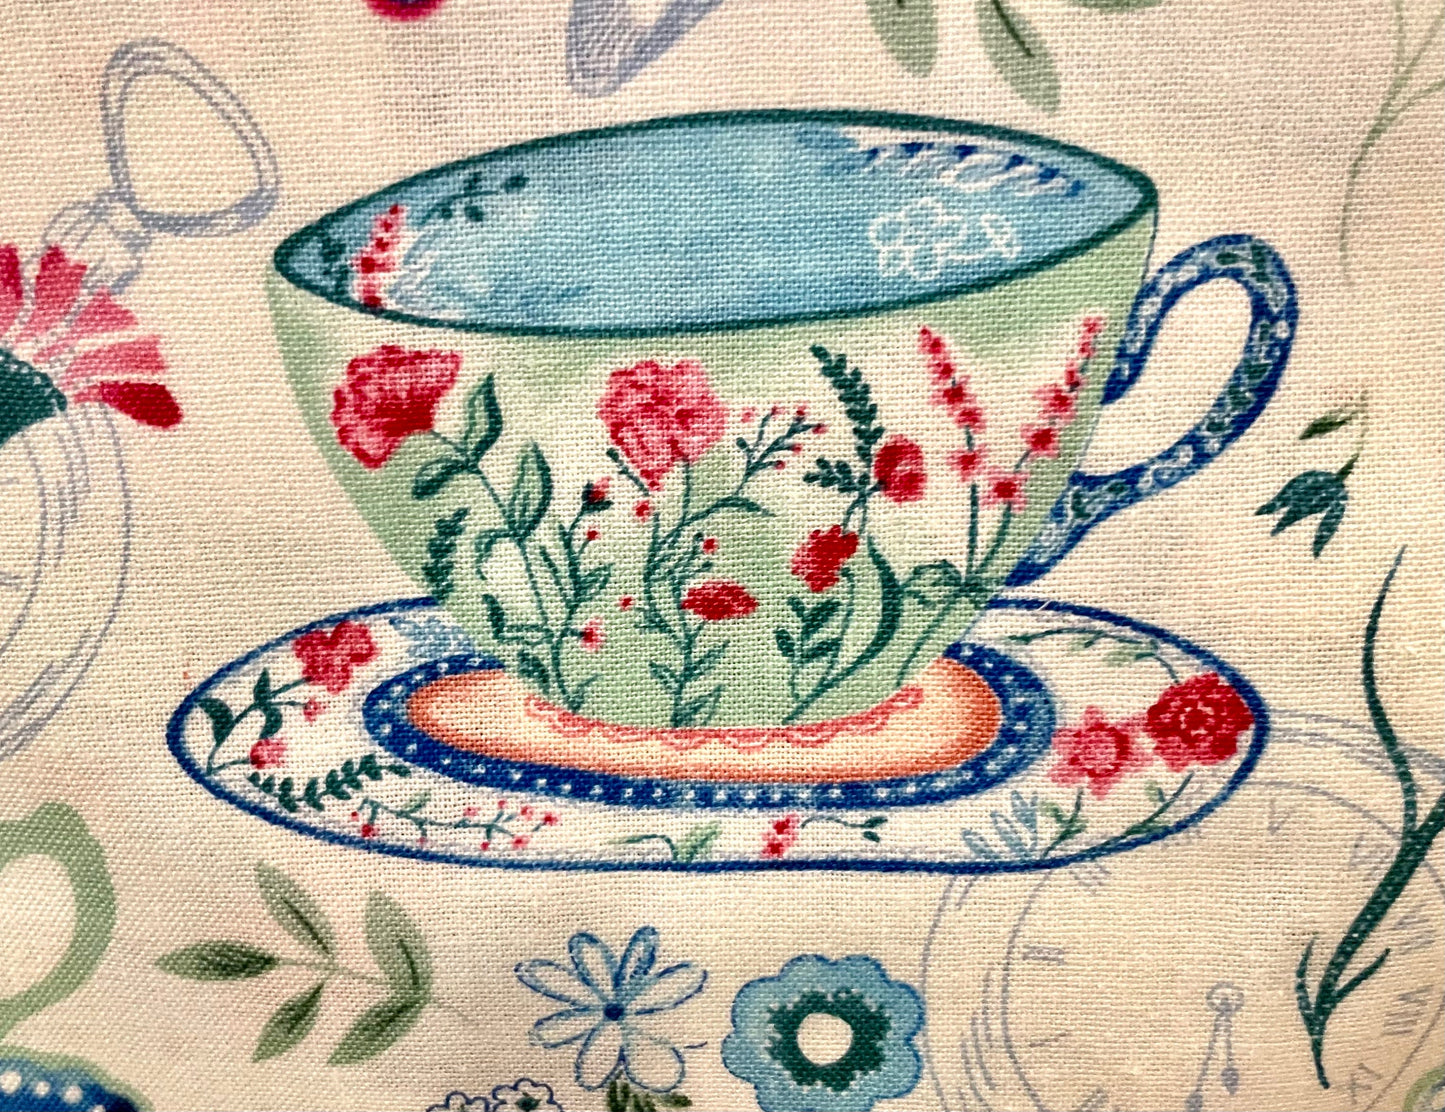 Beautiful tea cup high tea blanket